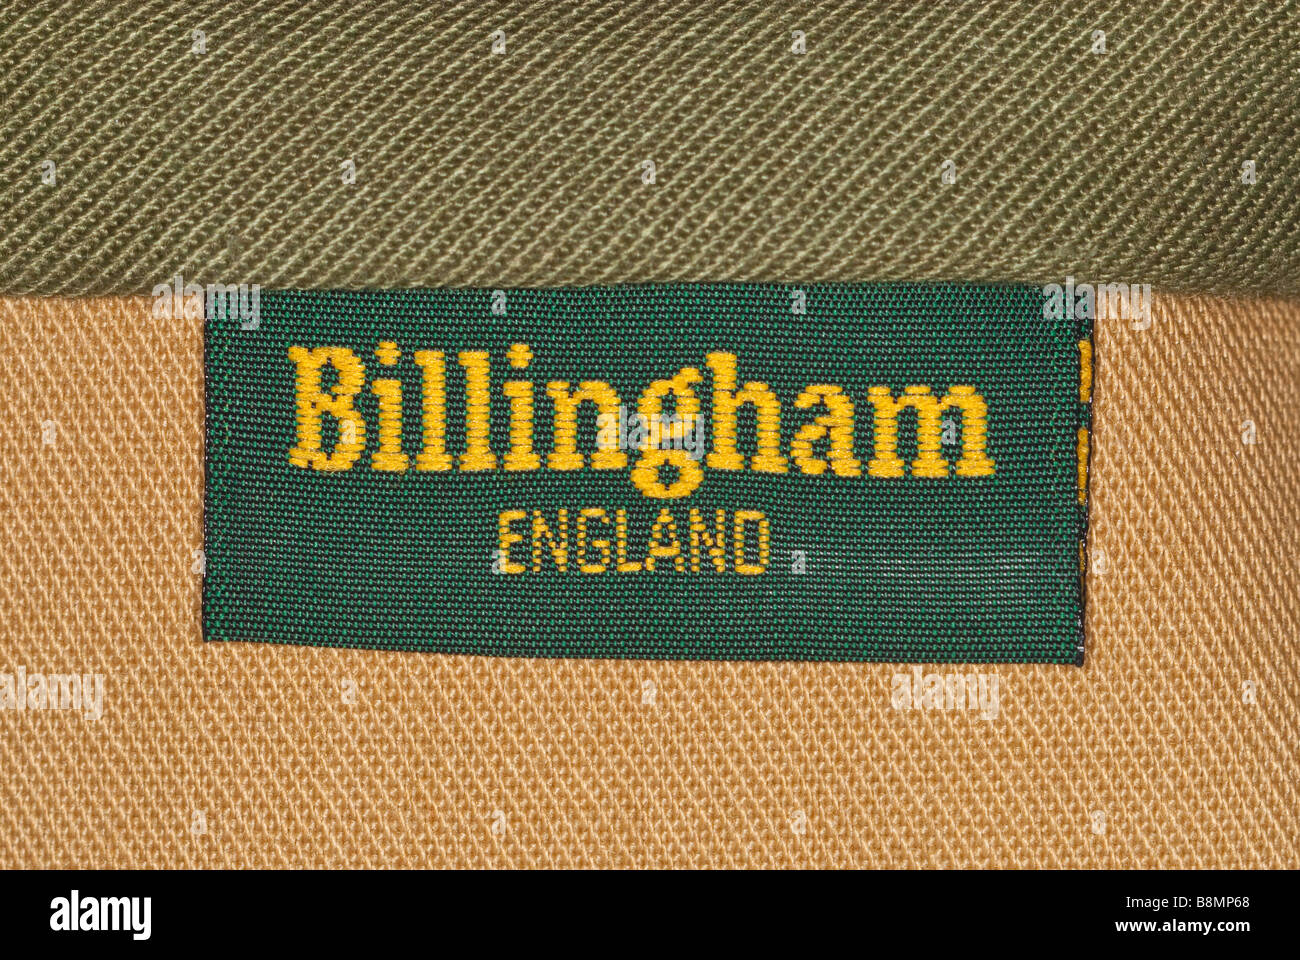 Un gros plan d'une photographie de l'appareil photo Billingham sac fait en Angleterre logo montrant Banque D'Images